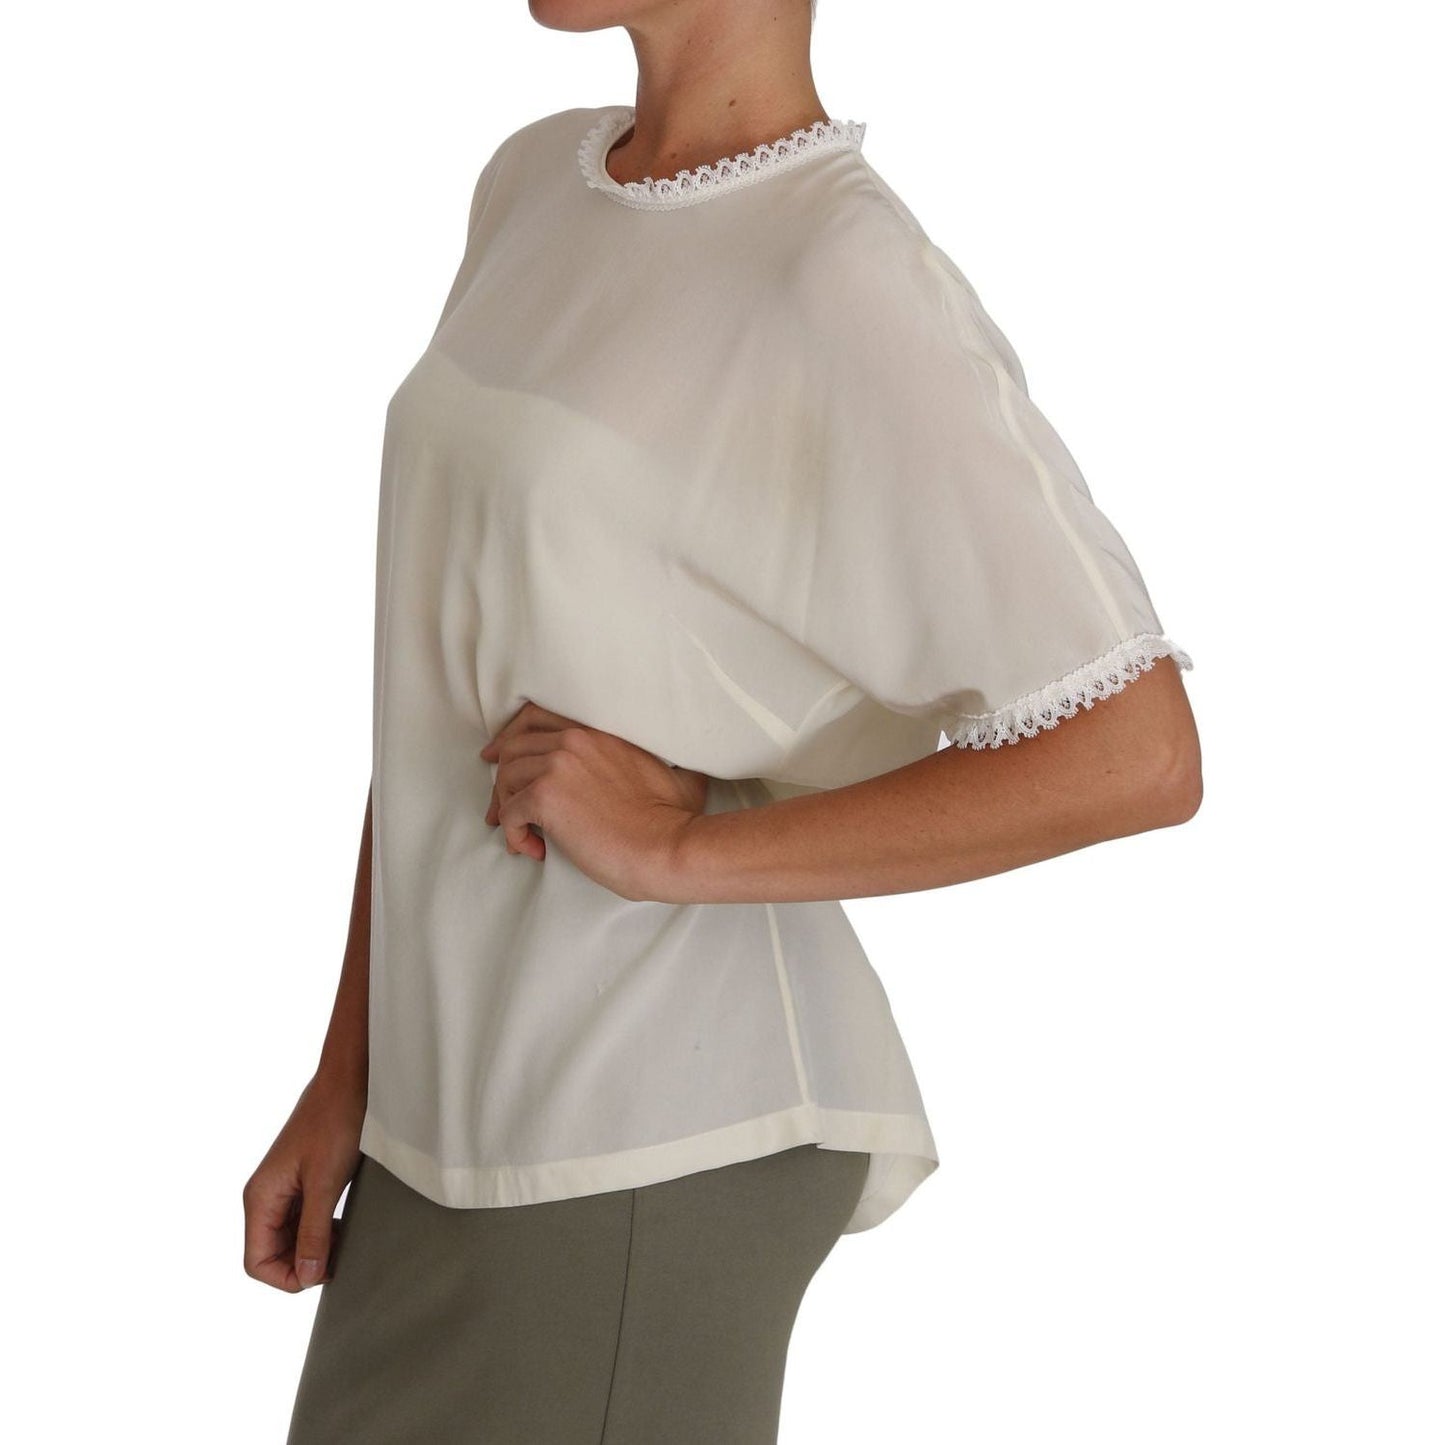 Dolce & Gabbana Cream Silk Lace-Detailed Blouse Top white-cream-silk-lace-top-blouse-t-shirt